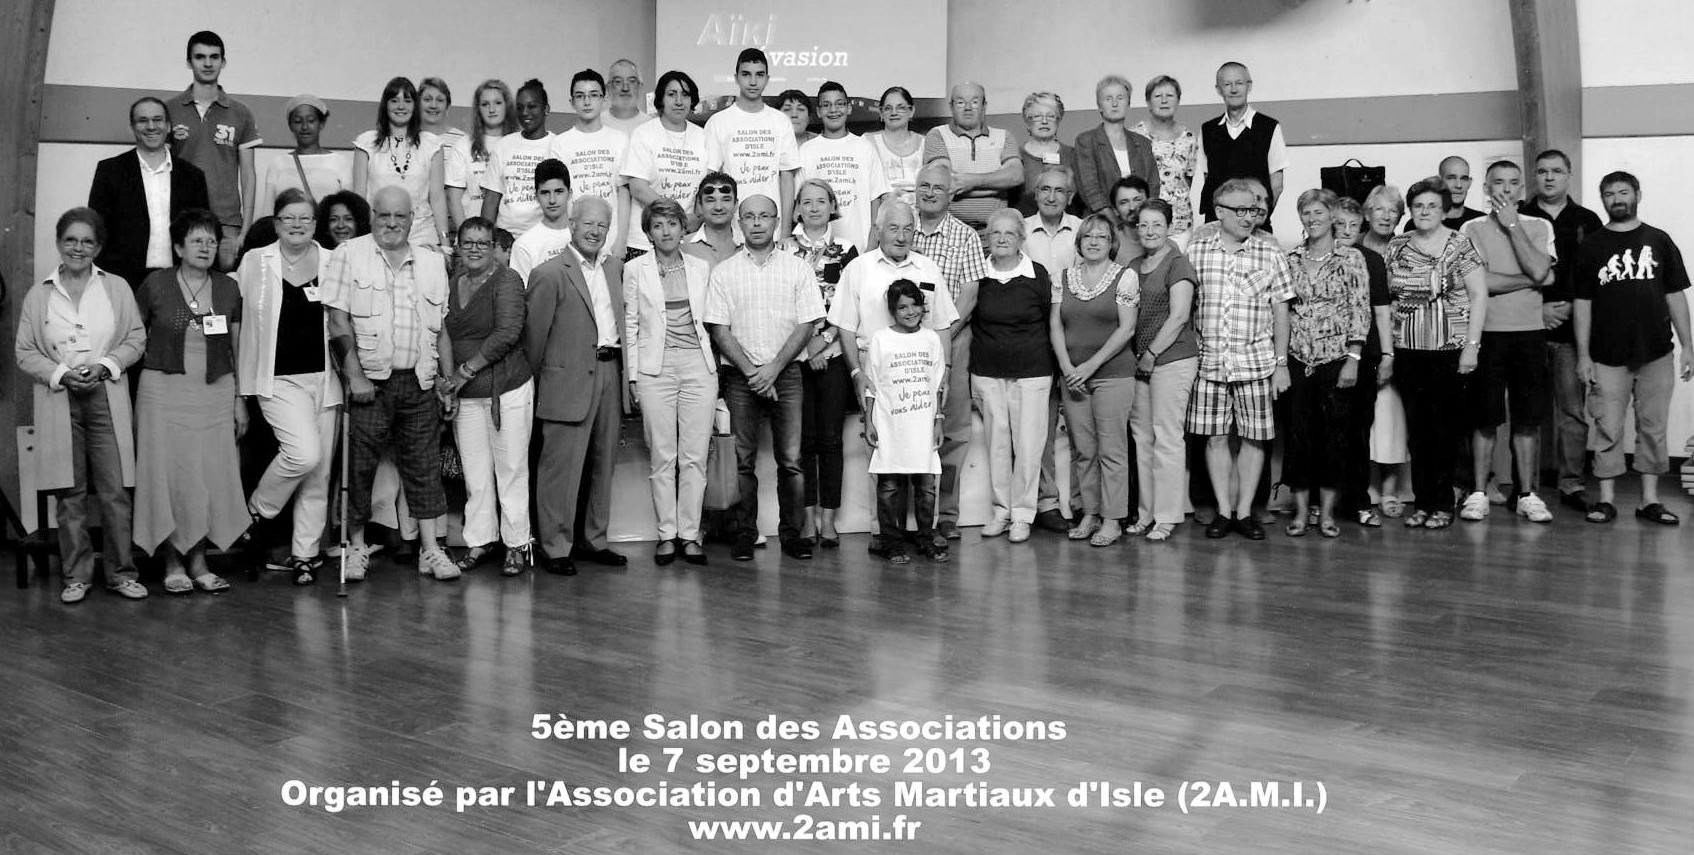 130907 Photo participants Salon Assoc 2013.jpg - 355,40 kB